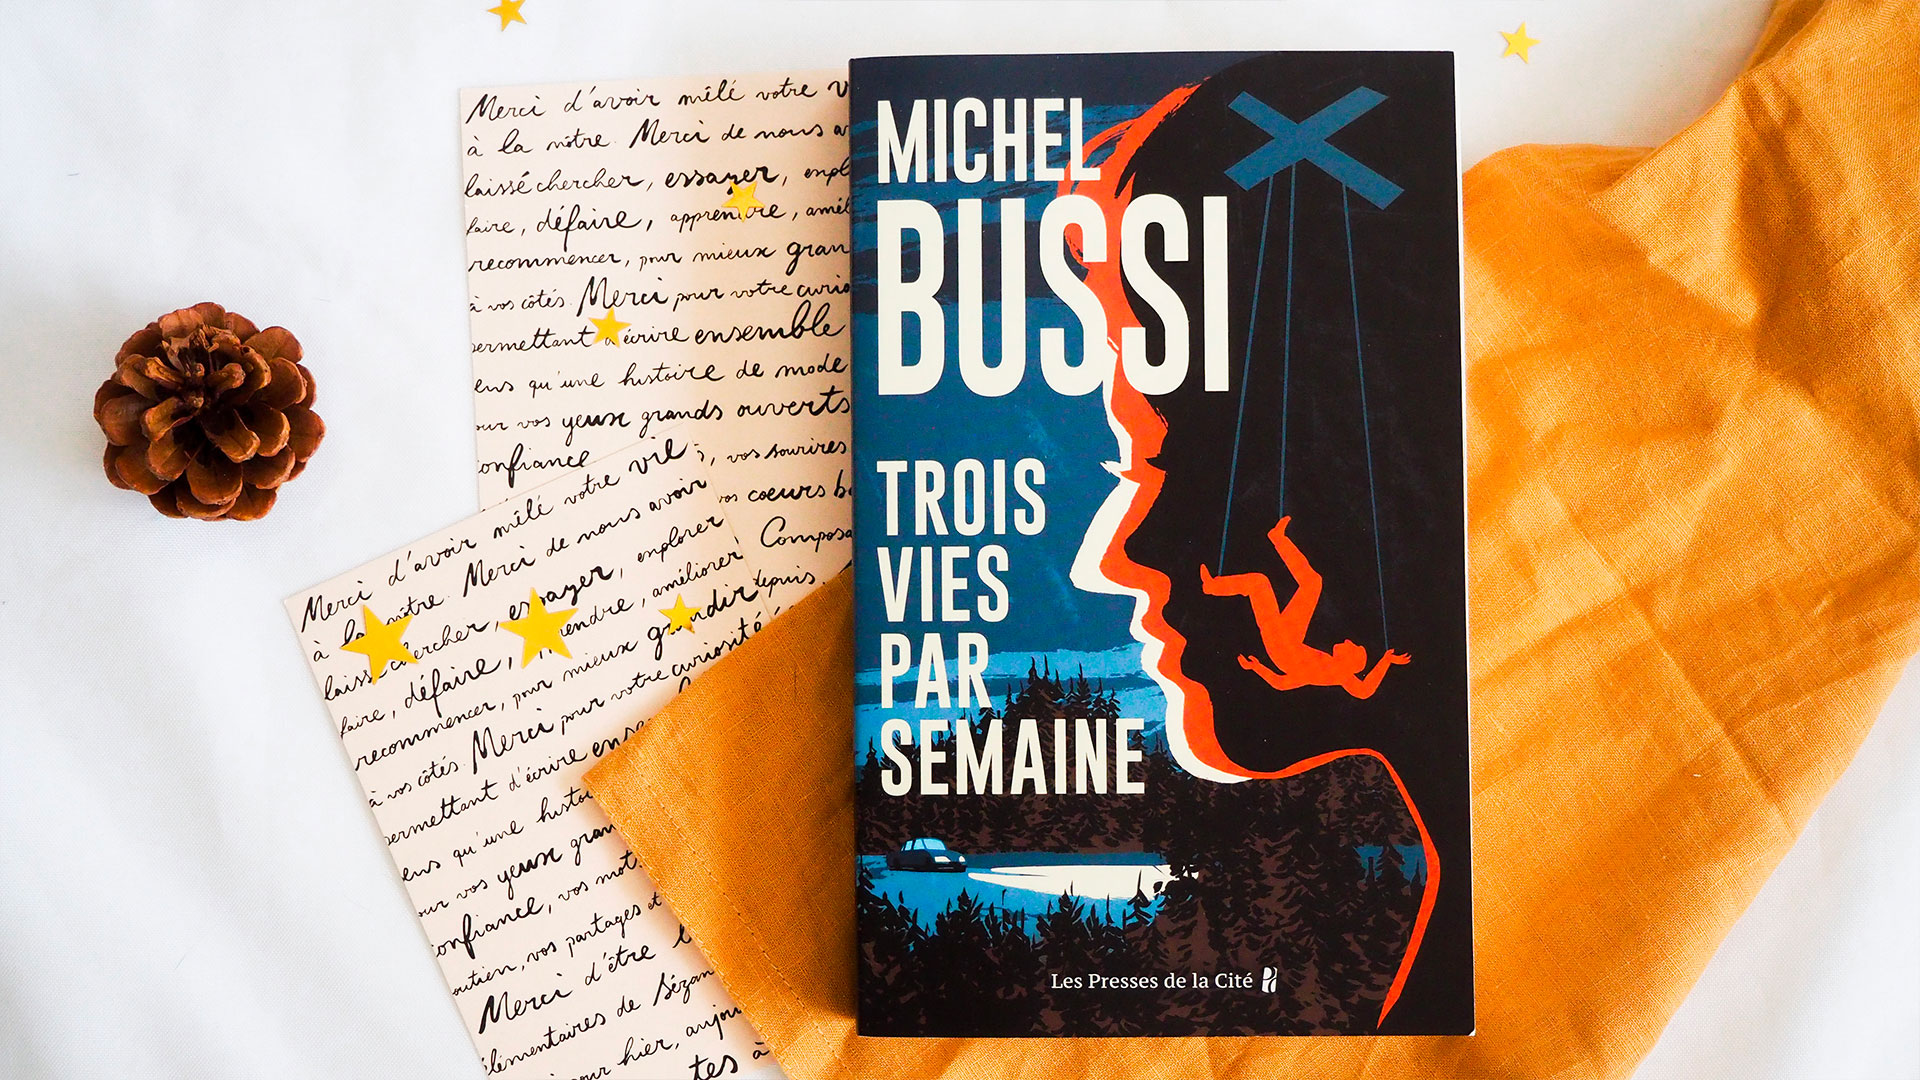 Michel Bussi : Trois vies par semaine